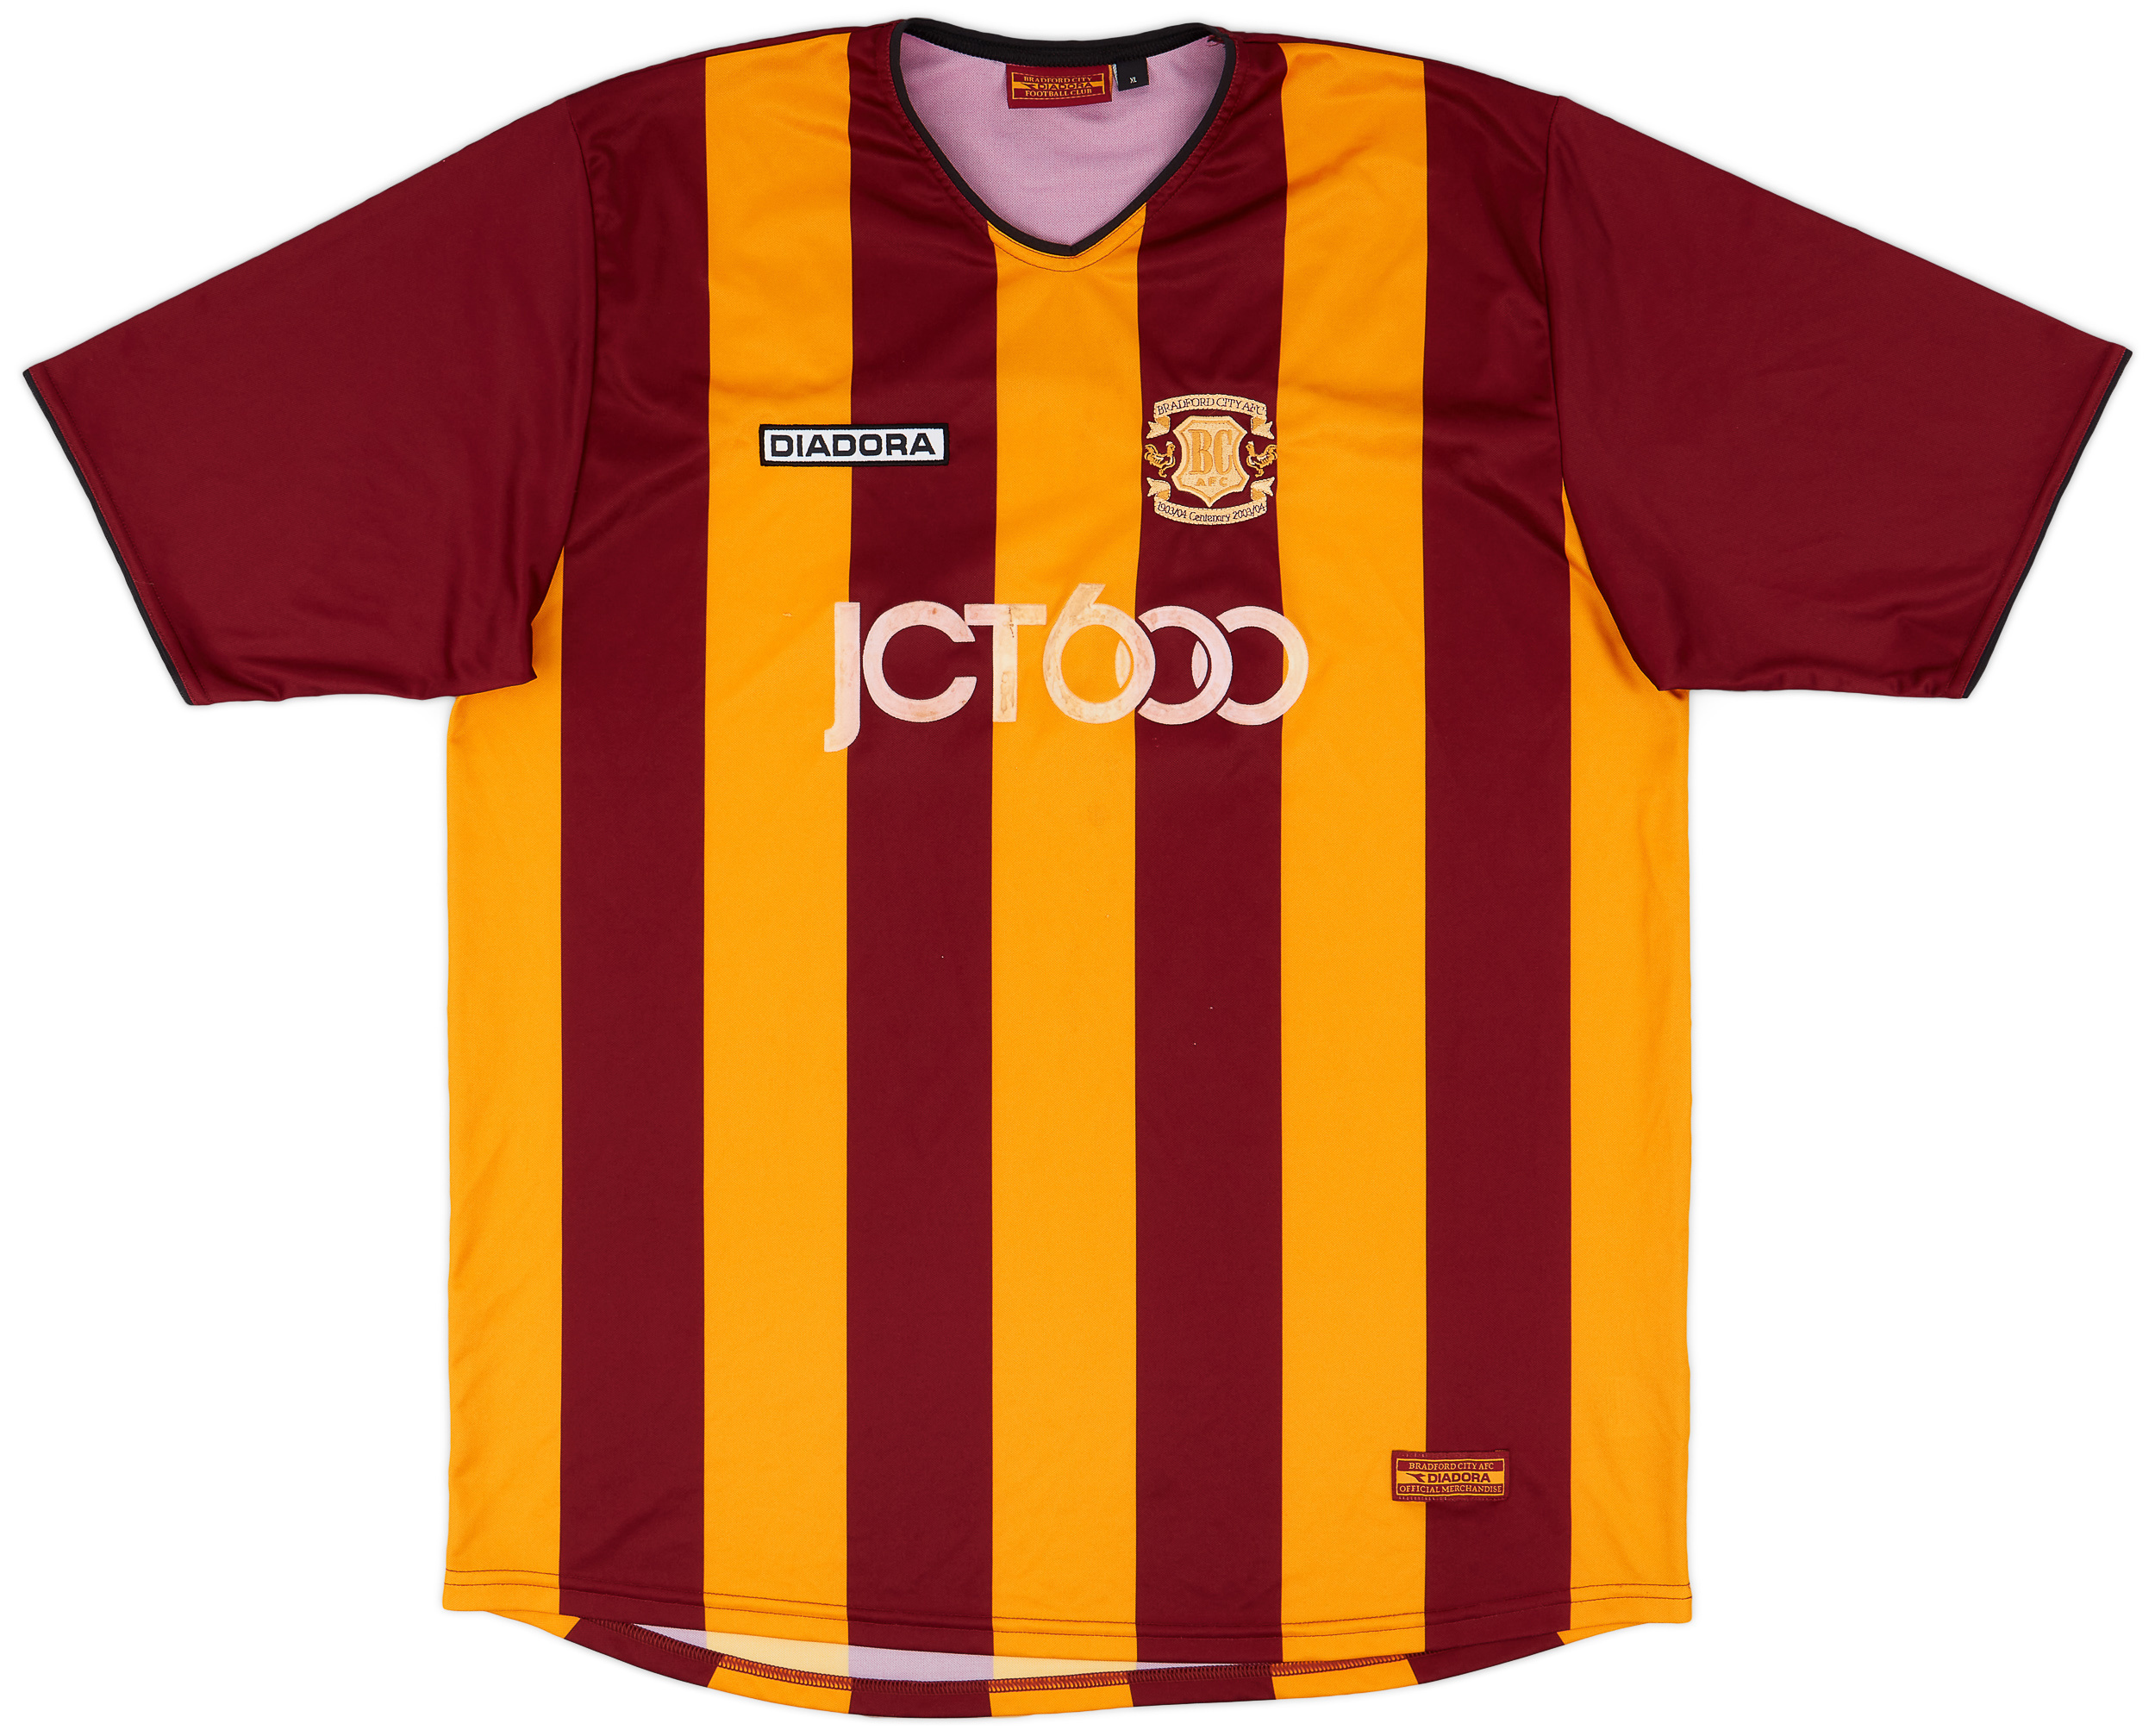 2003-04 Bradford City Centenary Home Shirt - 6/10 - ()